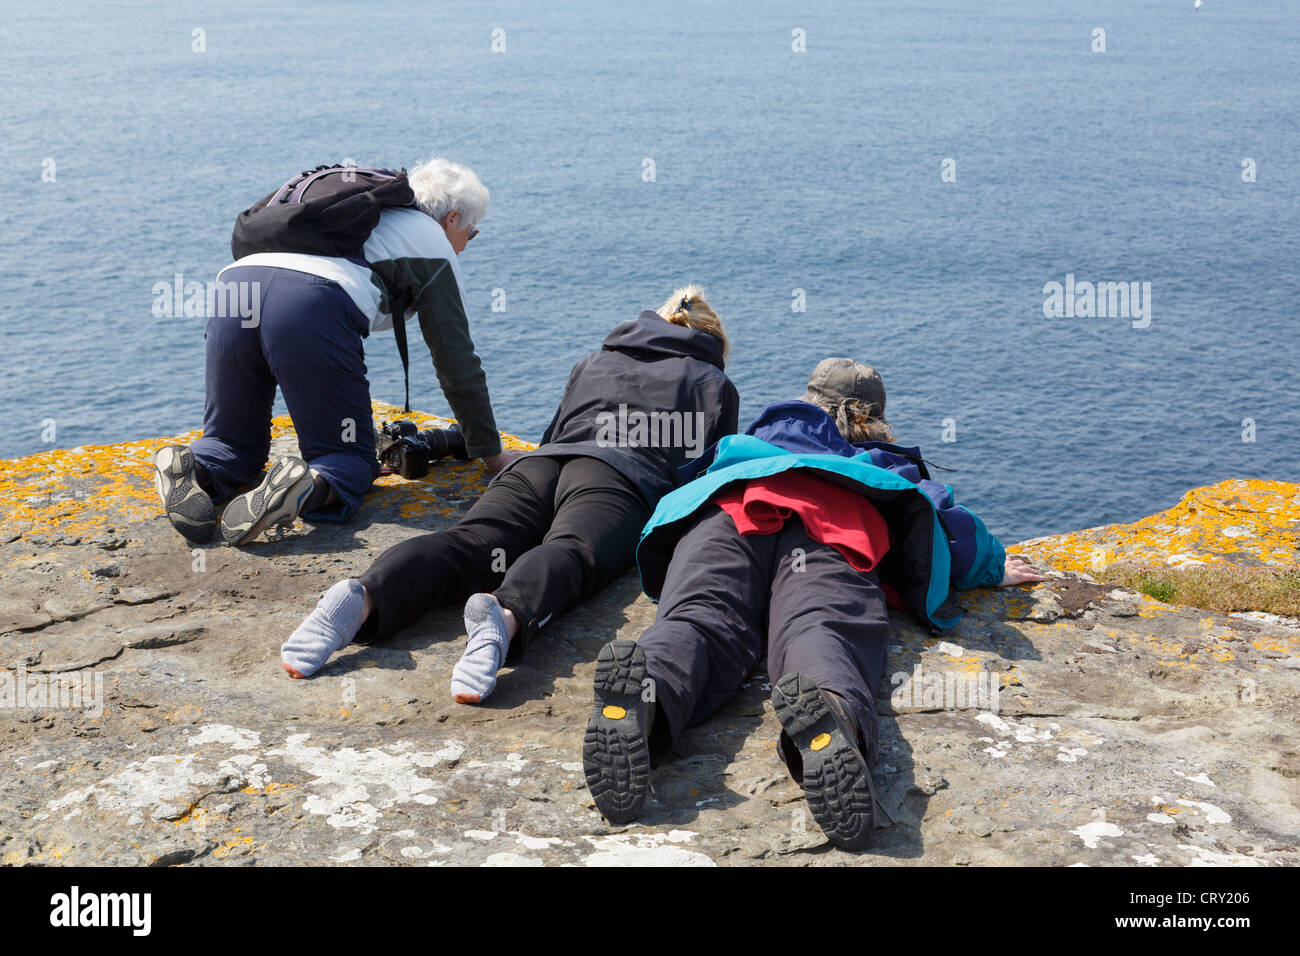 Drei Frauen, die über den Rand des Seacliff, vor Ort Papageientaucher auf Noupe Kopf RSPB, Insel Westray, Orkney Inseln, Schottland, UK Stockfoto